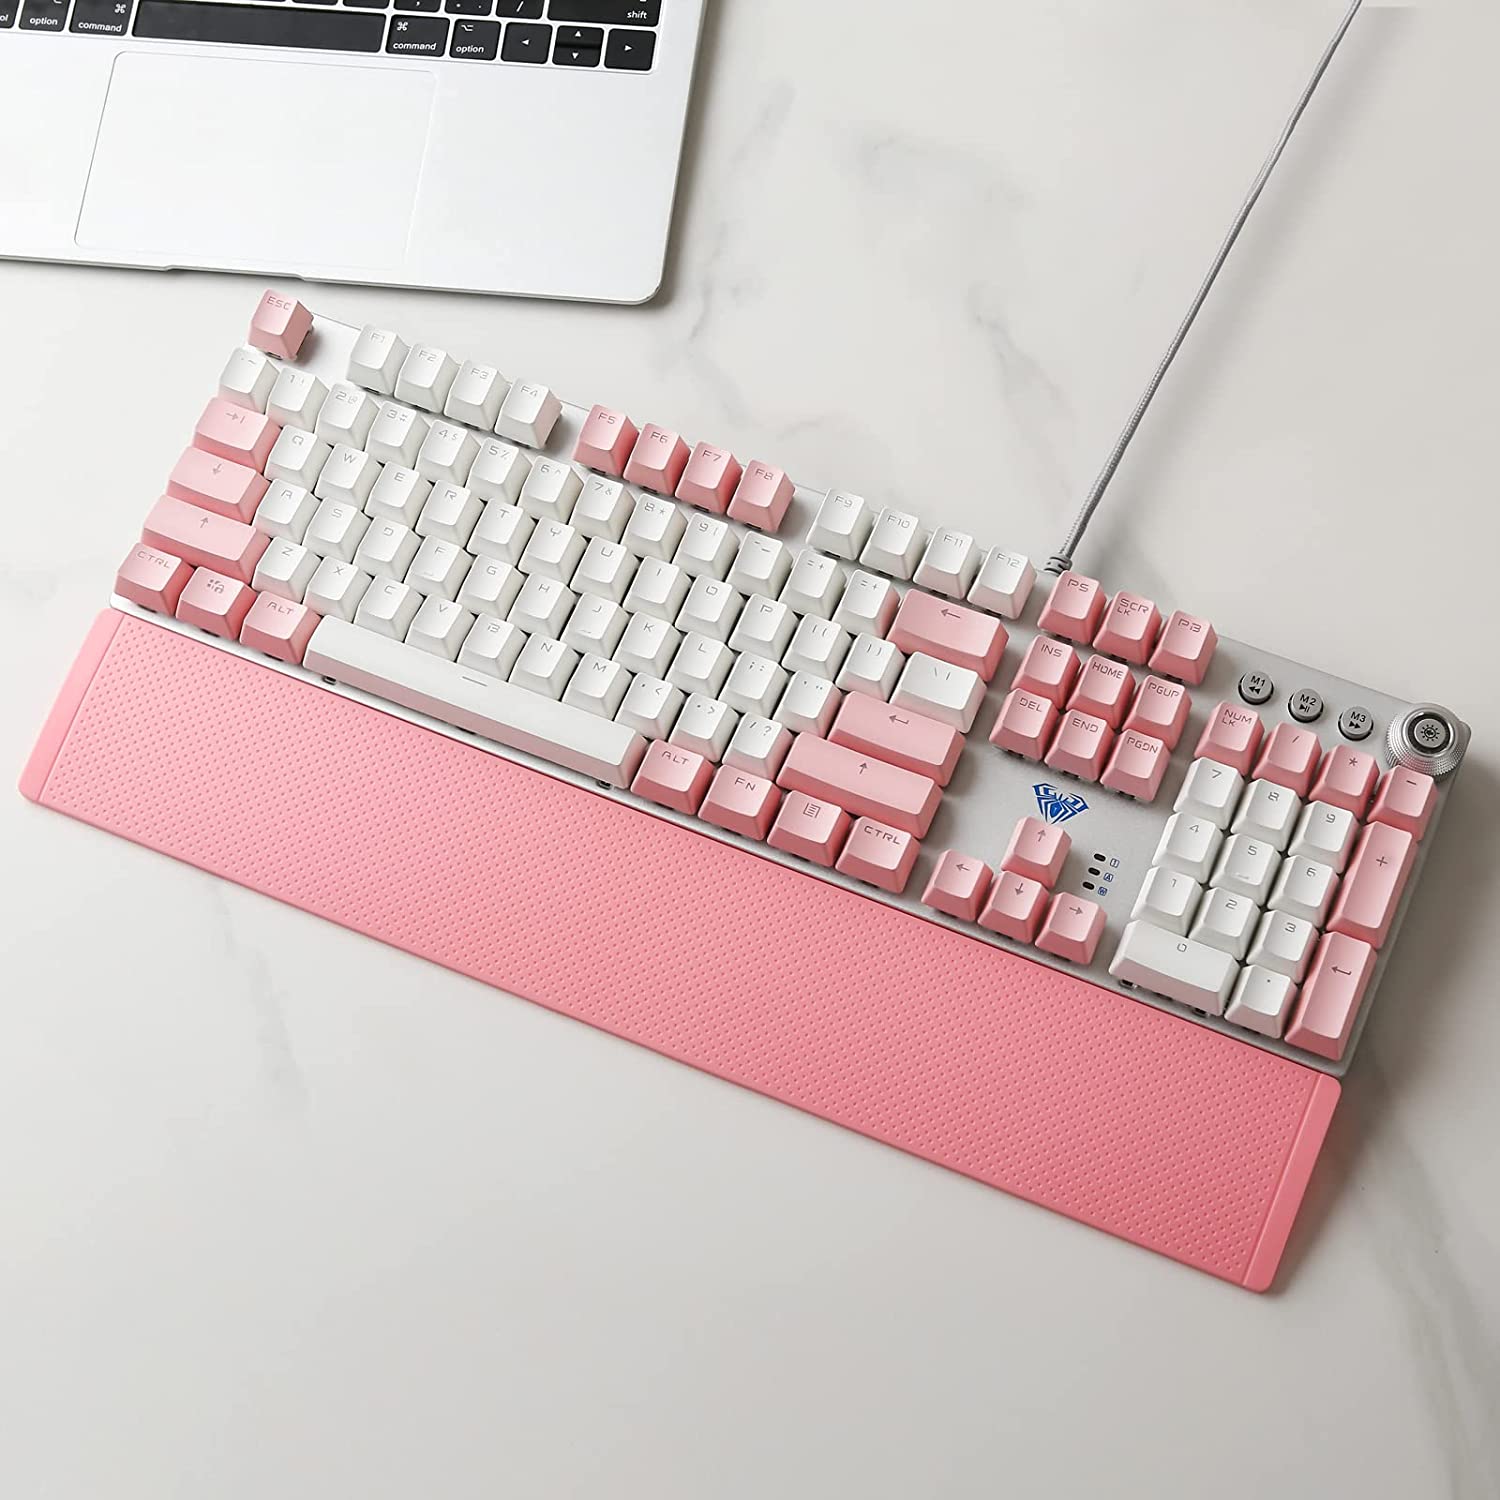 Aula-F2088-Gaming-Keyboard-Pink-White-5